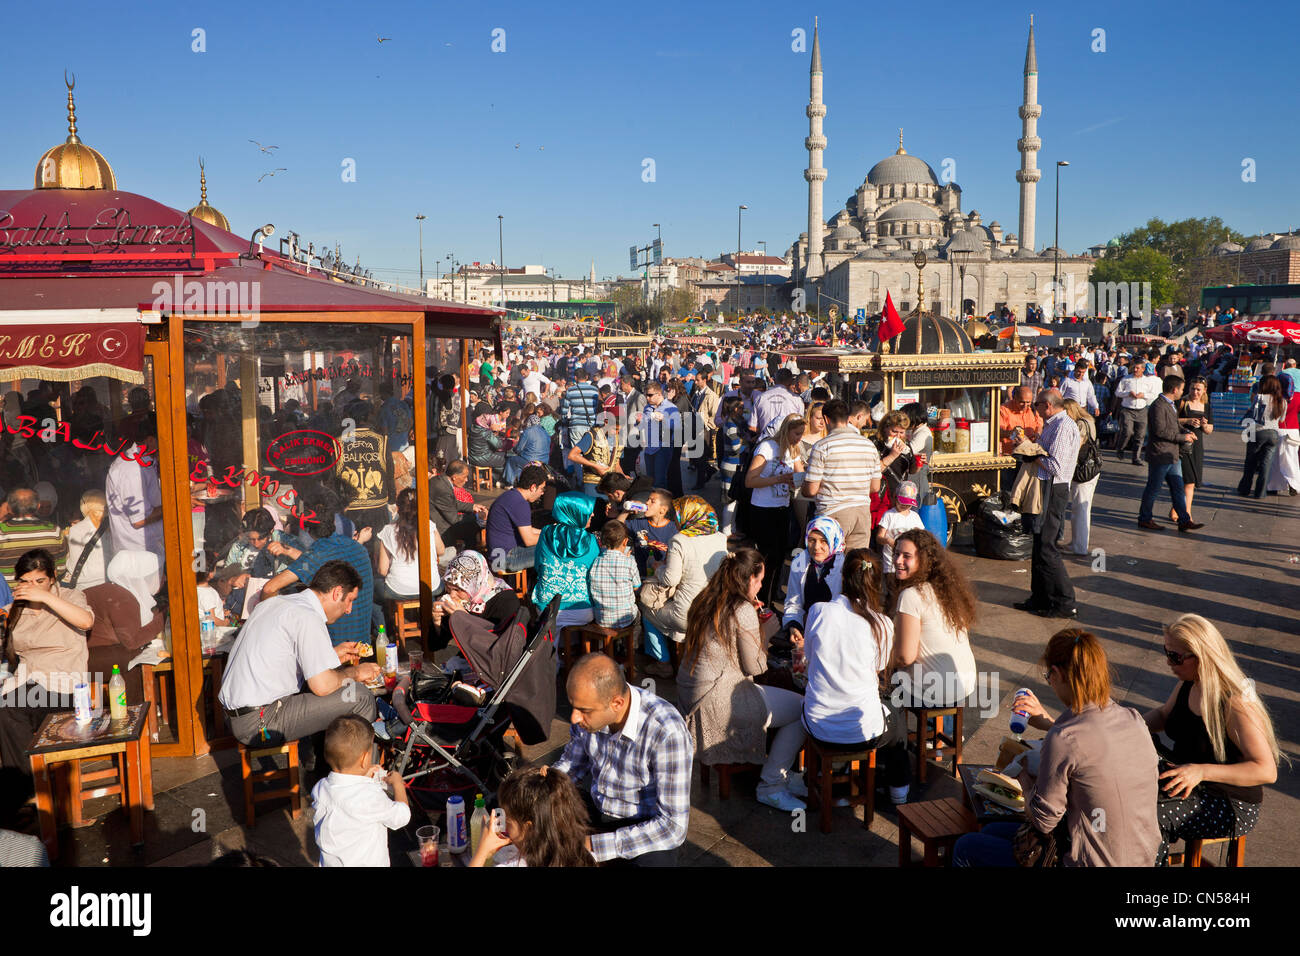 Turchia, Istanbul, centro storico elencati come patrimonio mondiale dall' UNESCO, Eminönü district, ristoranti di pesce su barche e il Foto Stock